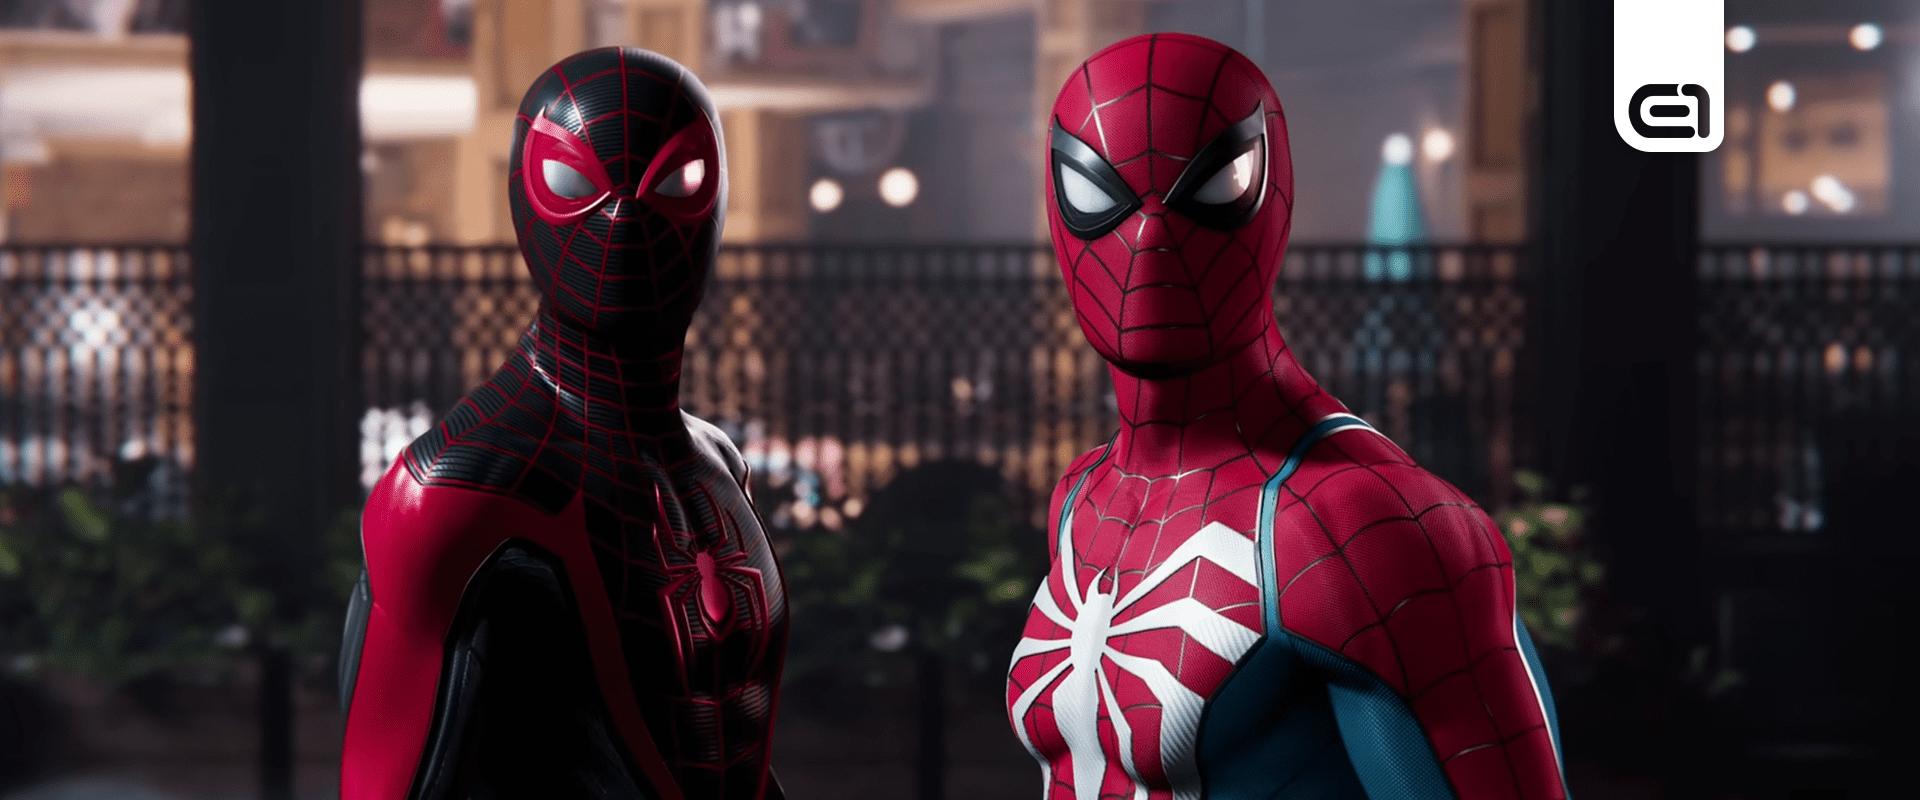 Végre kiderült, hogy mikor érkezik a Marvel's Spider-Man 2